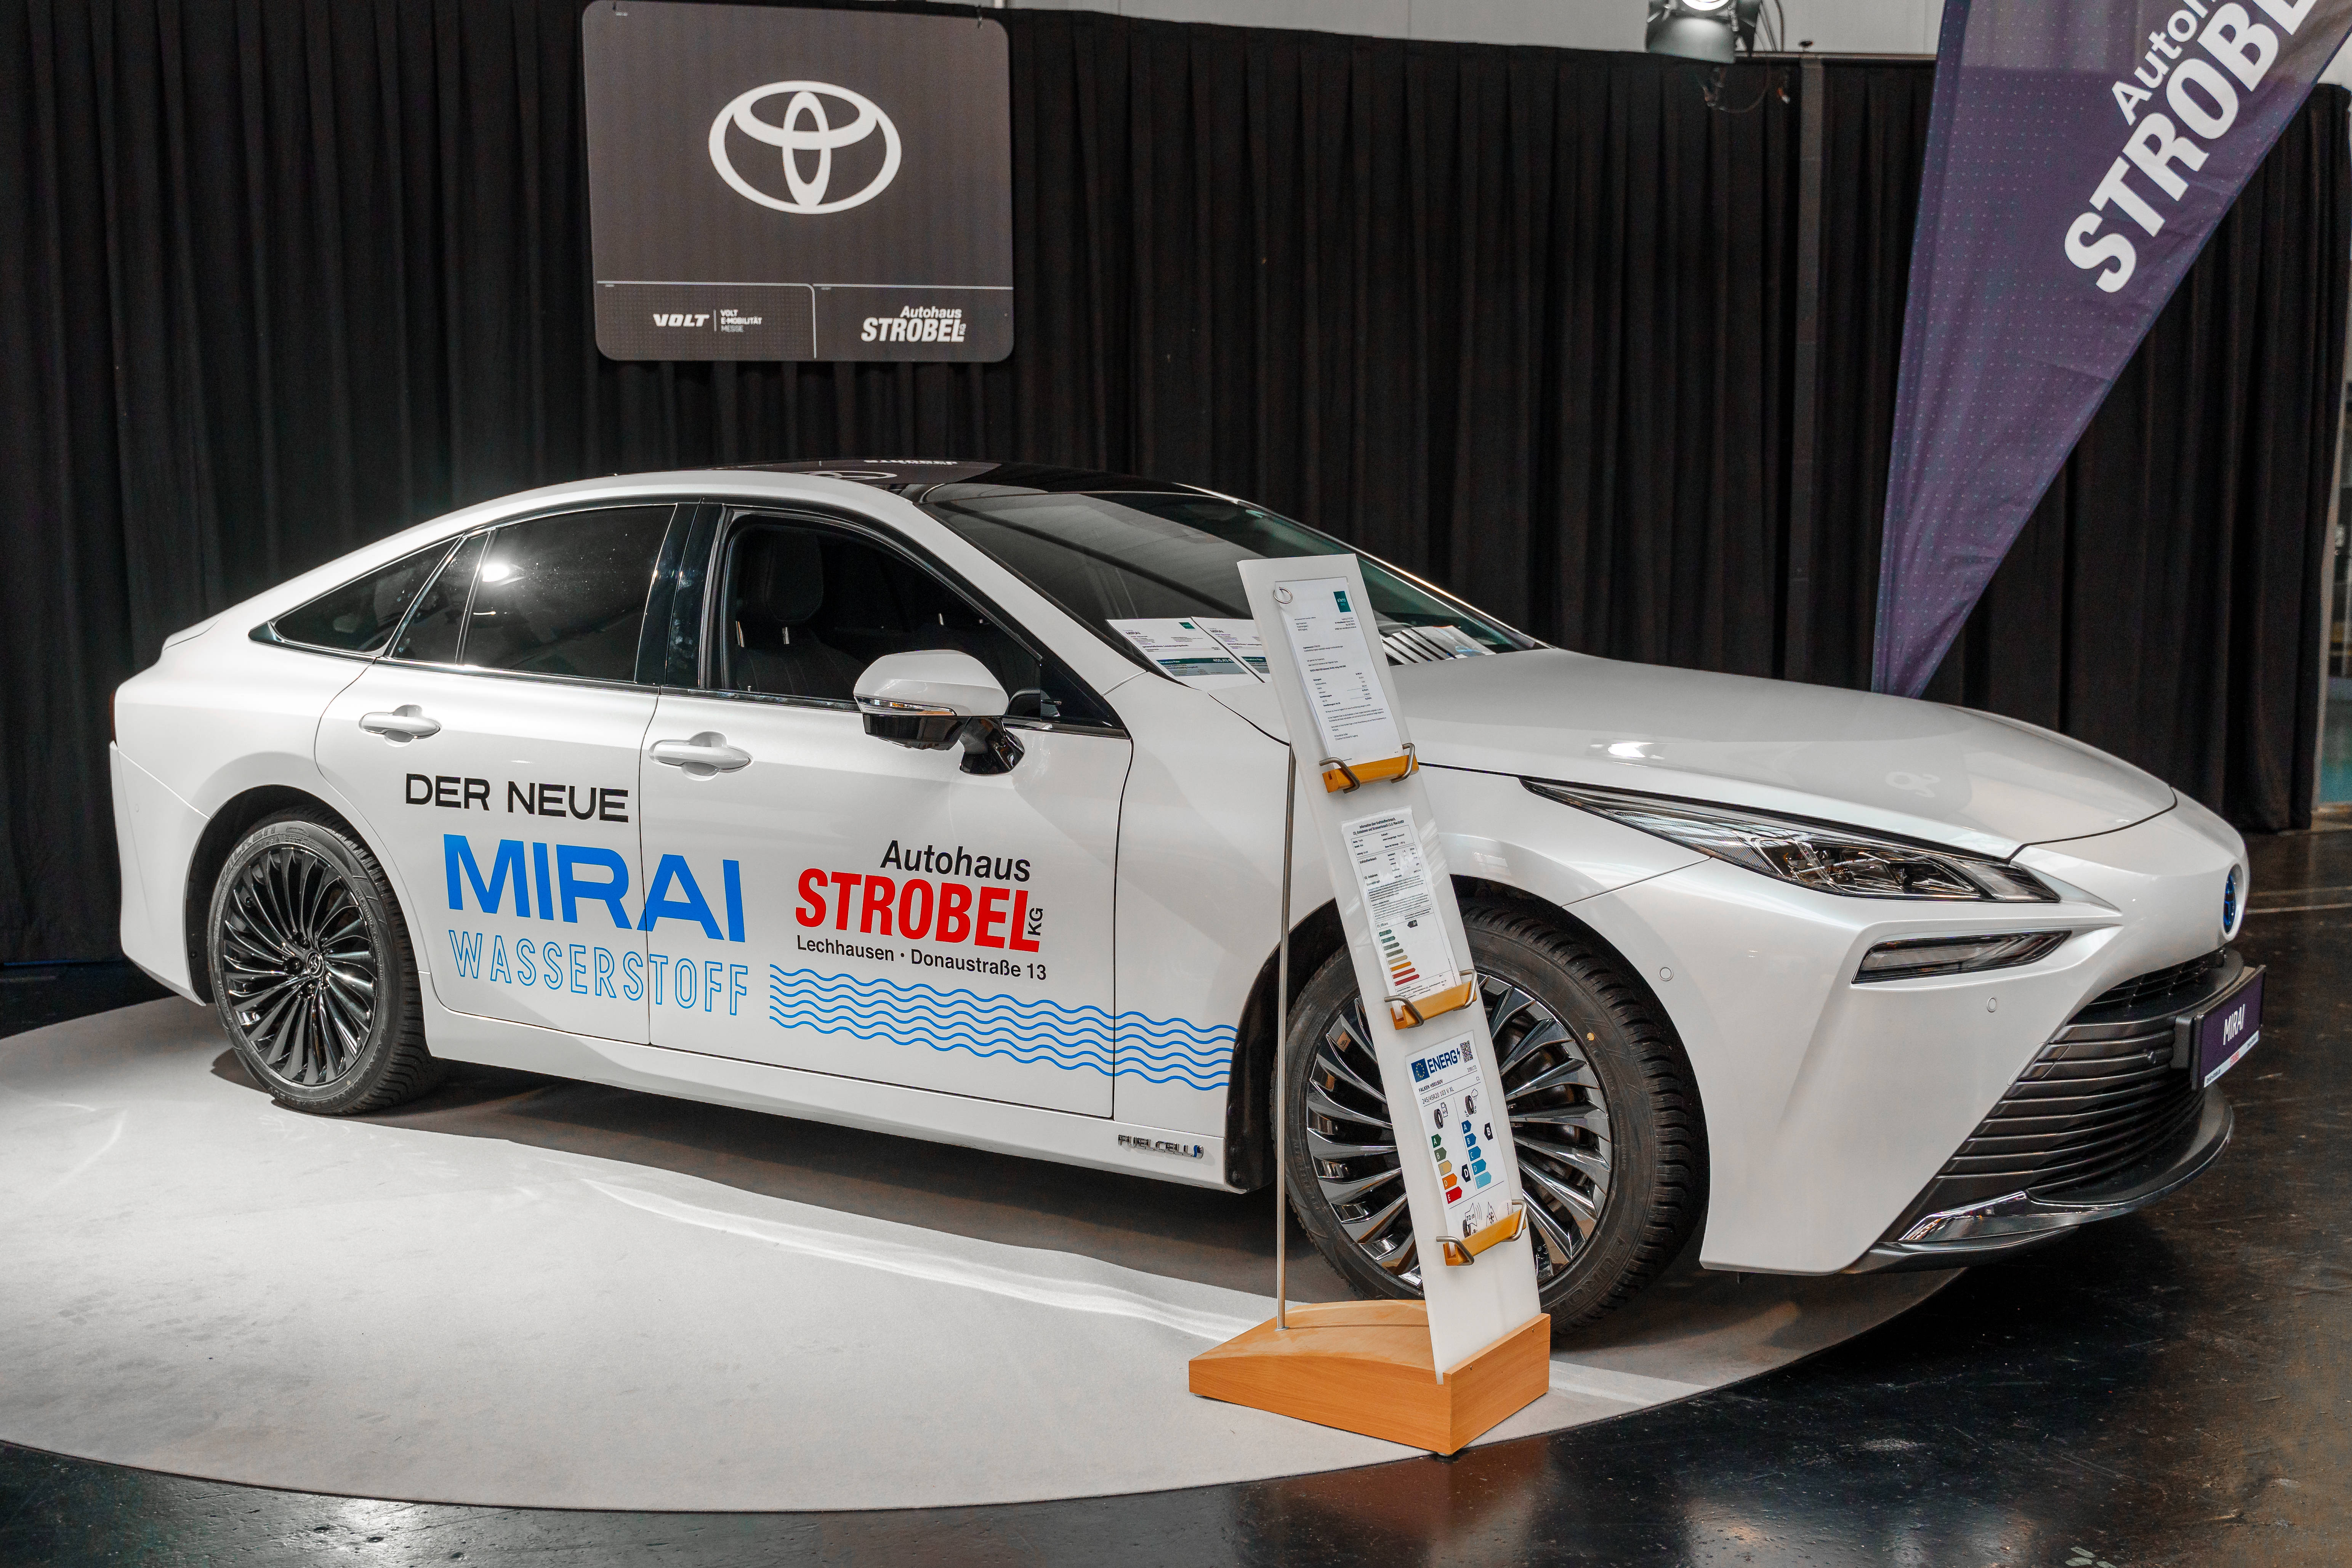 Jeux olympiques : la flotte de véhicules à hydrogène de Toyota dans le viseur de scientifiques